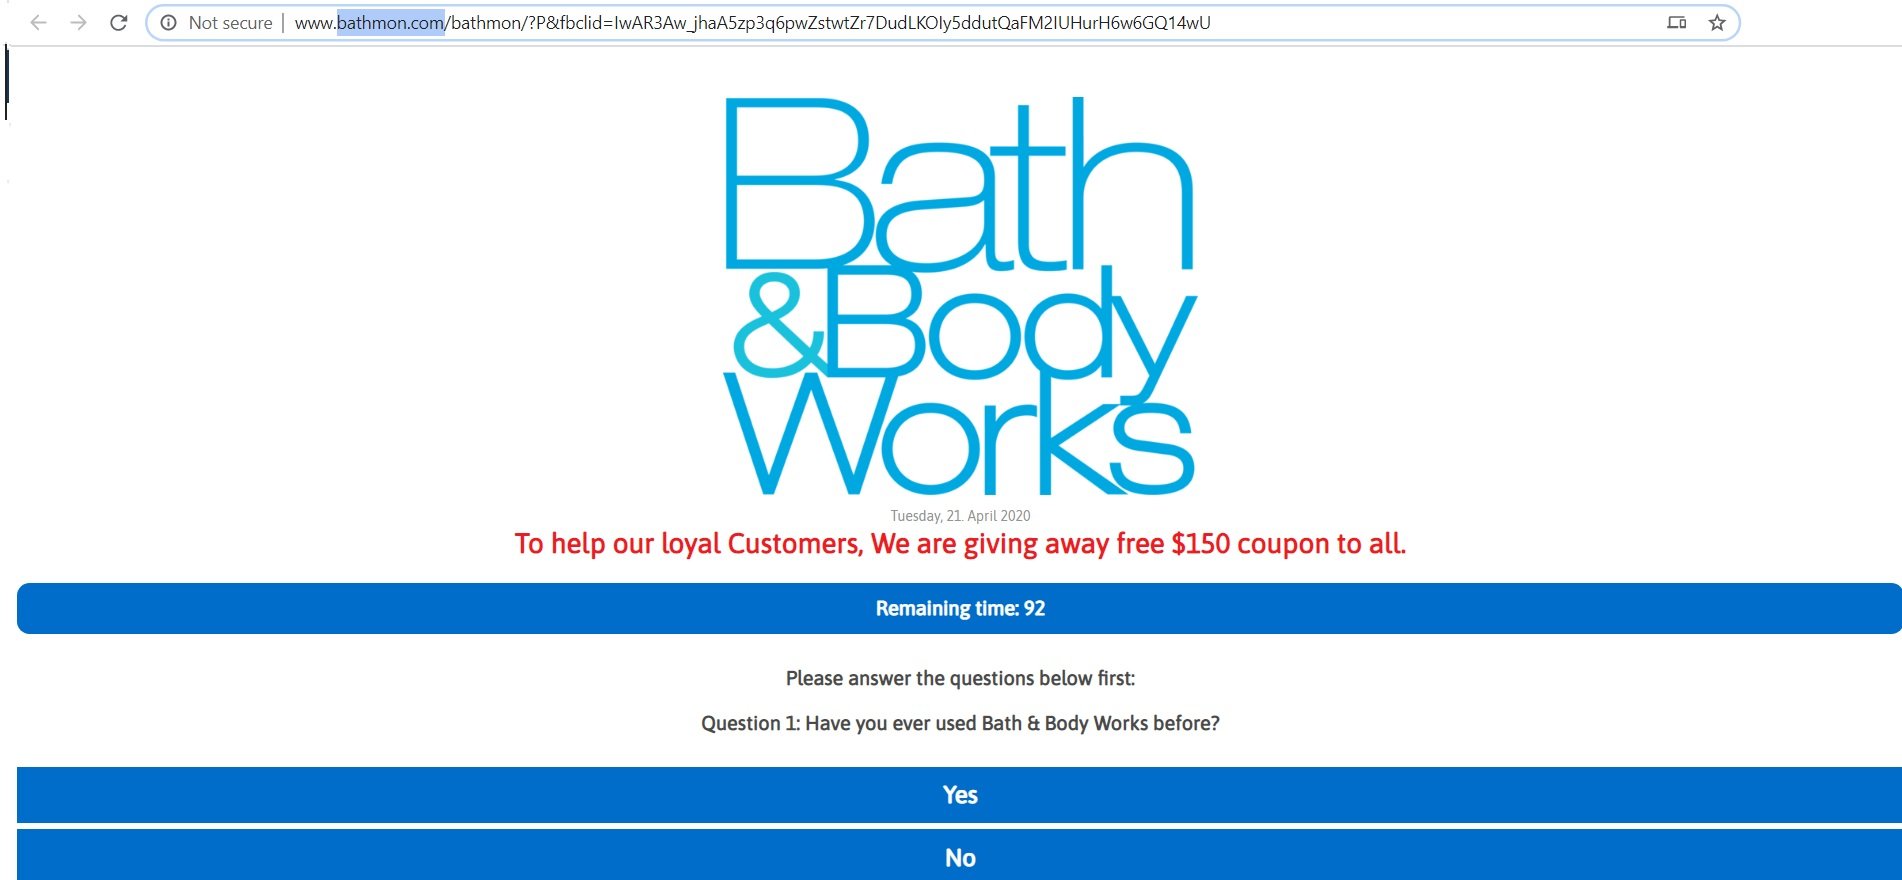 Fake Bath & Body $150 Coupon Facebook Scam Website